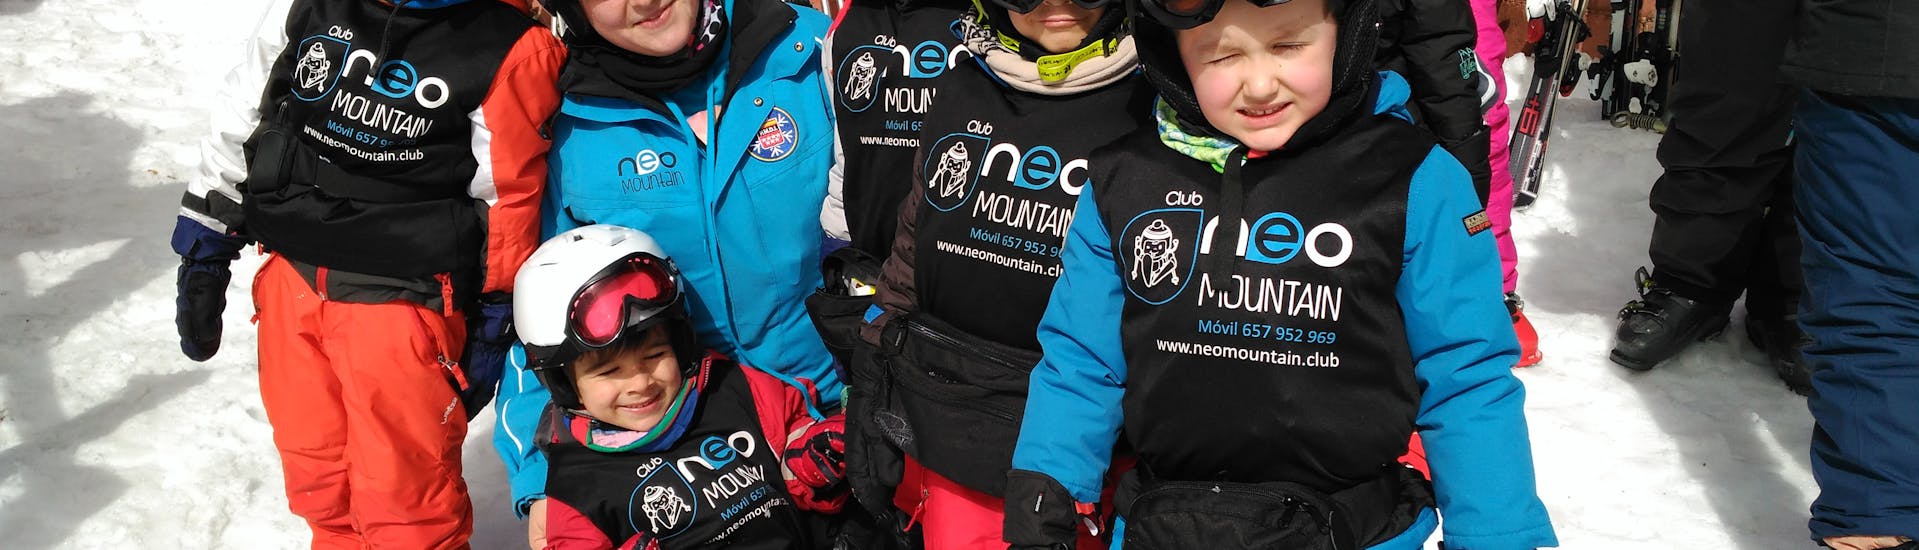 Niños aprendiendo a esquiar durante una clase de esquí para principiantescon Neomountain club valdesqui.